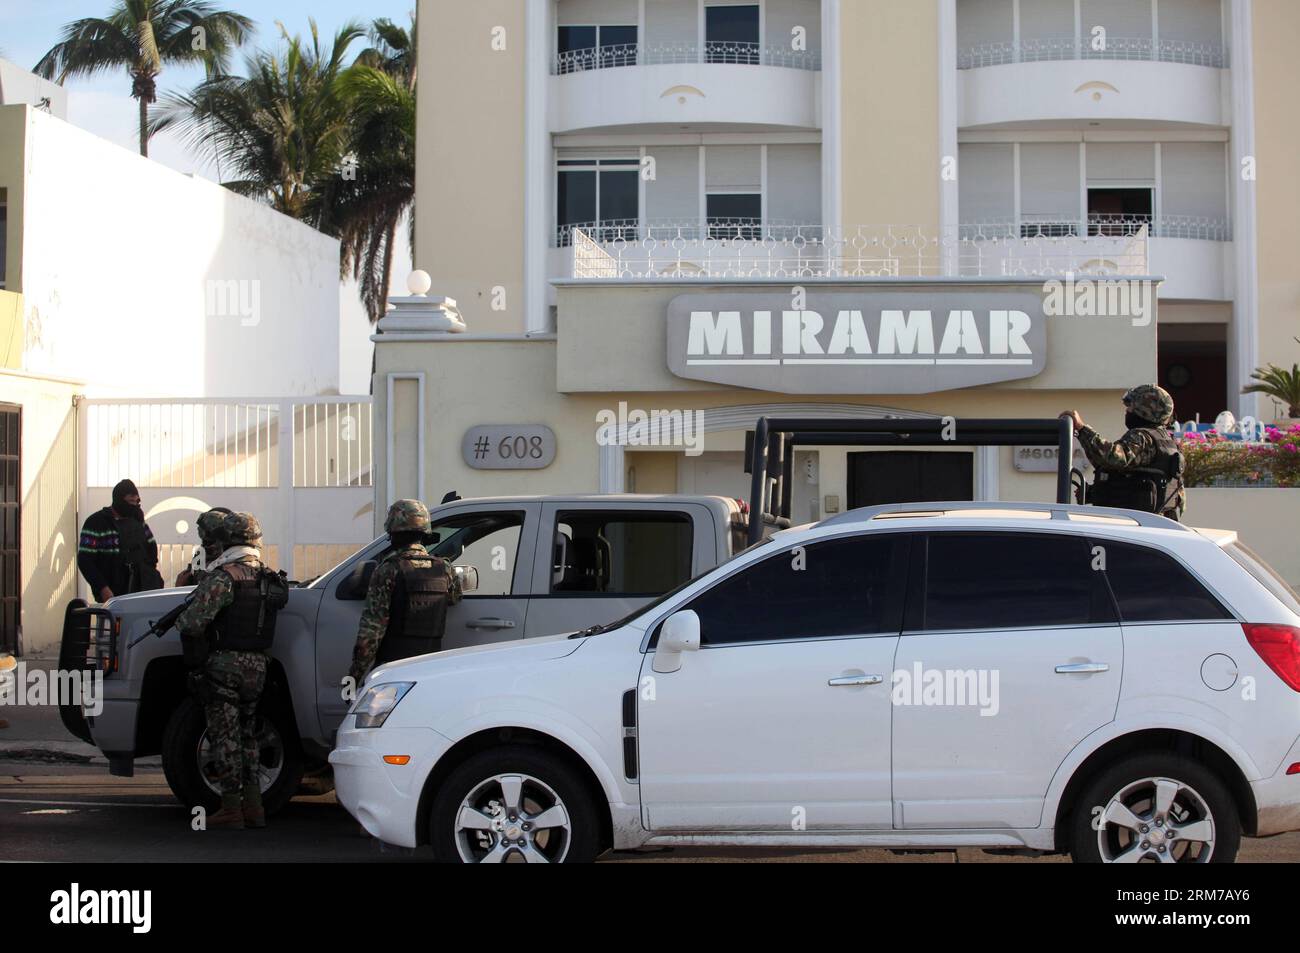 (140222) -- SINALOA, 22 février 2014 (Xinhua) -- des soldats de la marine mexicaine montent la garde dans une rue de Mazatlan, Sinaloa, Mexique, le 22 février 2014. Le chef du cartel mexicain de Sinaloa, Joaquin Guzman Loera, alias El Chapo Guzman, considéré par les États-Unis comme l un des barons de la drogue les plus puissants au monde, a été capturé par les autorités mexicaines et américaines en territoire mexicain, selon la presse locale. (Xinhua/Juan Perez) (ce) MEXIQUE-SINALOA-DROGUE Lord-CAPTUERED PUBLICATIONxNOTxINxCHN 140222 Sinaloa février 22 2014 des soldats XINHUA de la Marine MEXICAINE tiennent la garde dans une rue de Mazatlan Banque D'Images